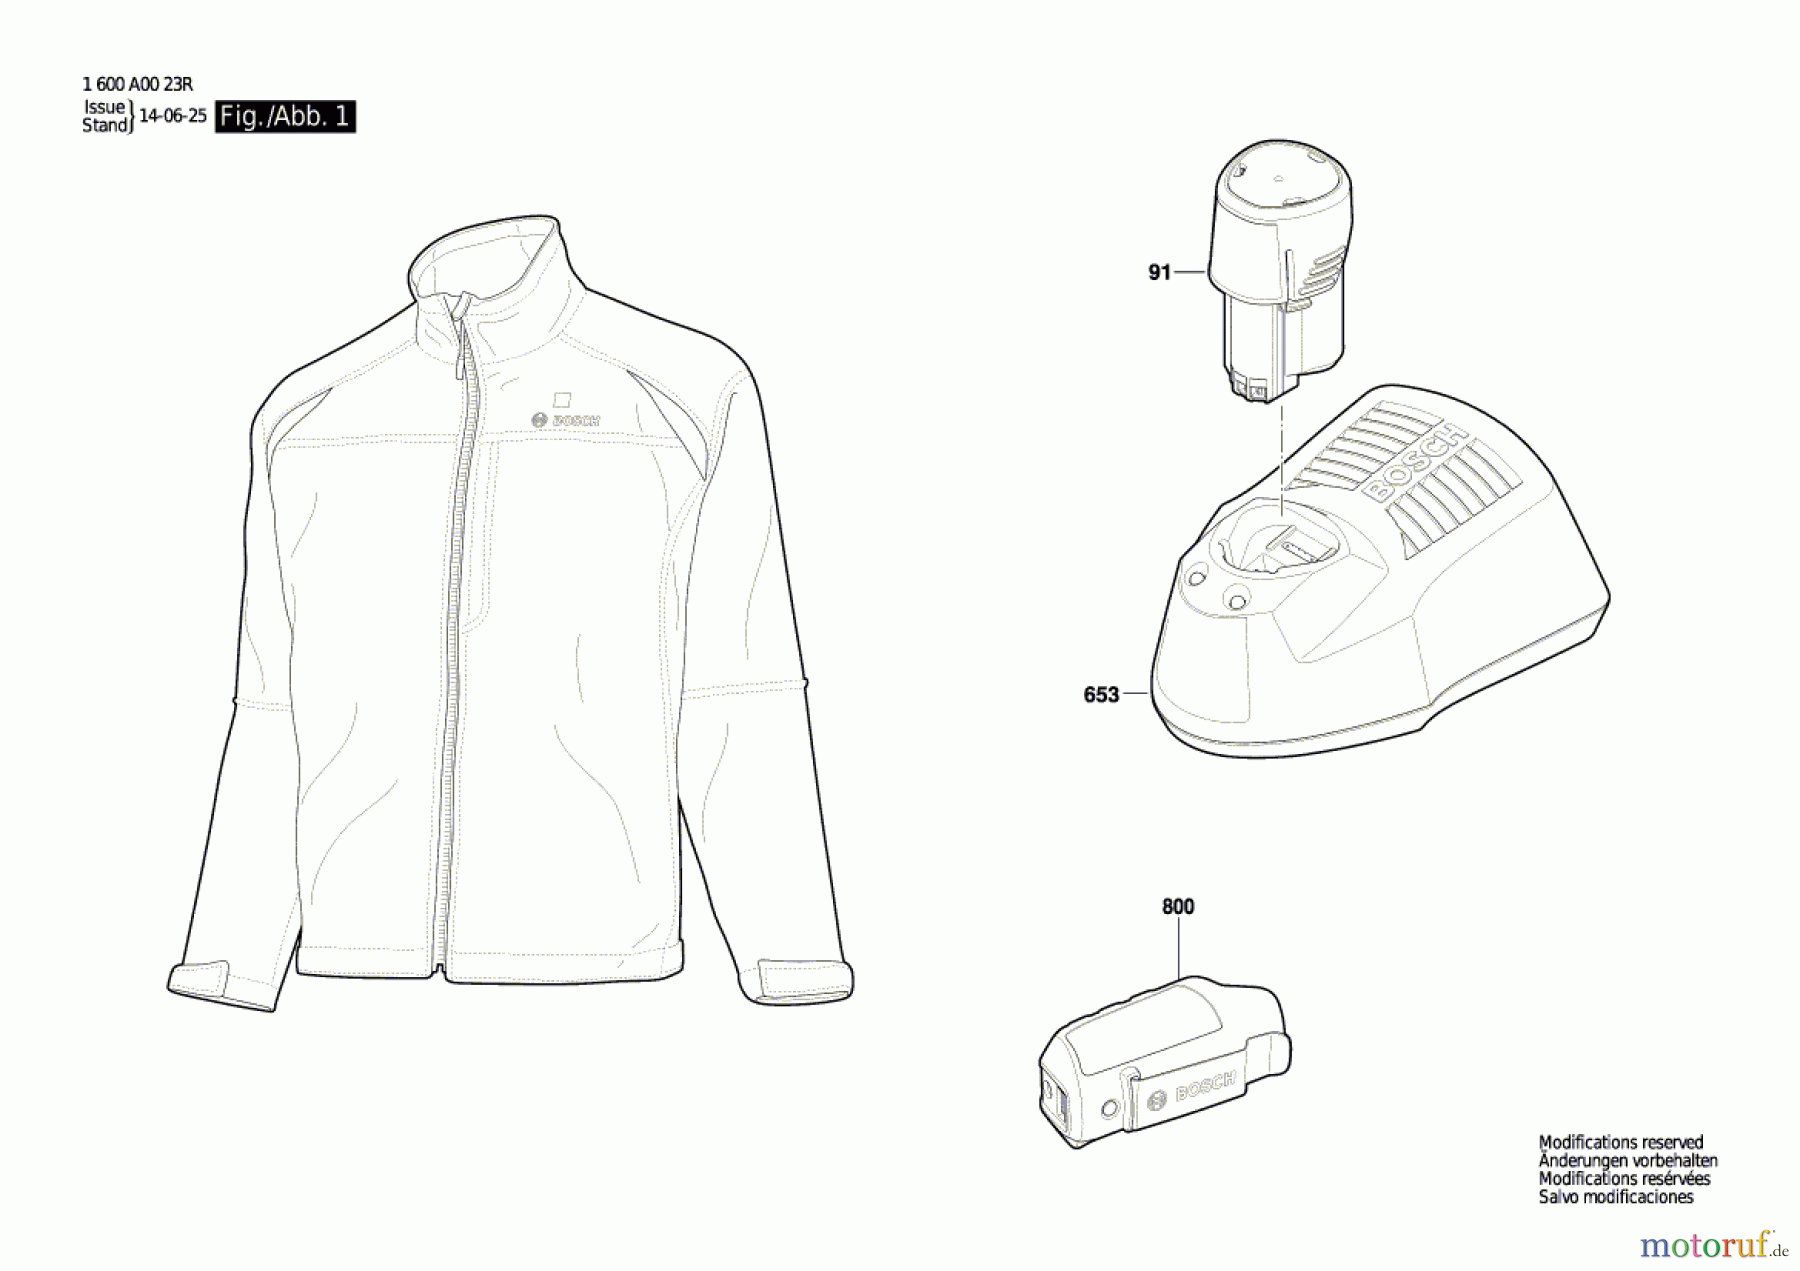  Bosch Werkzeug Winterjacke Heat+Jacket 10,8V Professional Seite 1